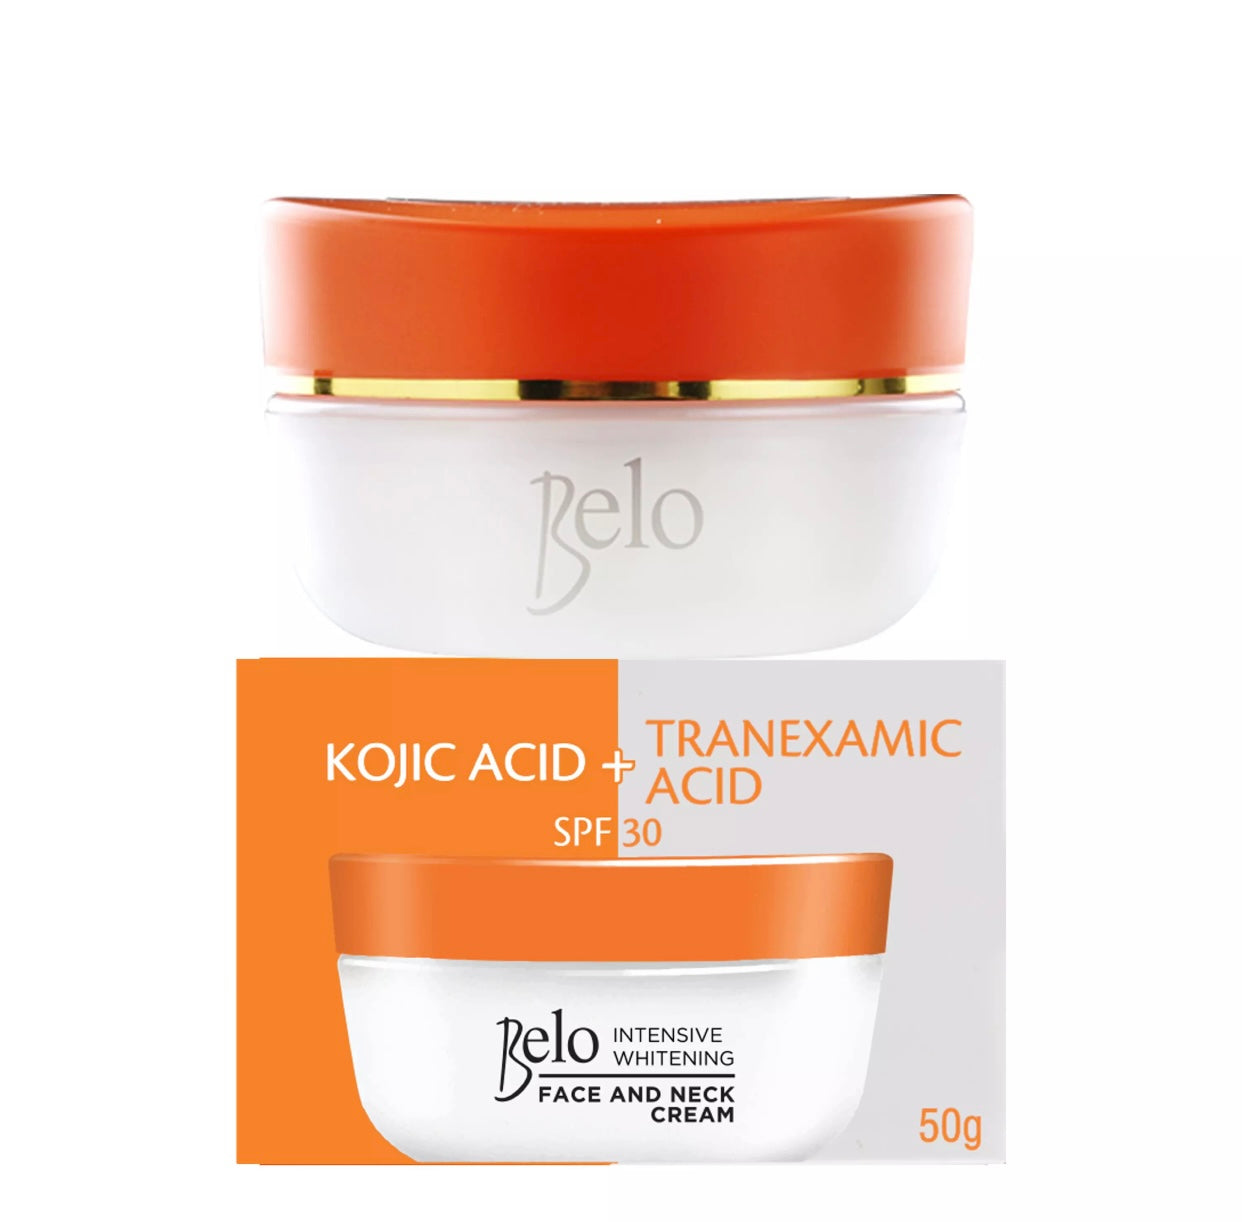 Belo Intensive Whitening Face & Neck Cream - Kojic Acid + Tranexamic Acid SPF30 - 50g